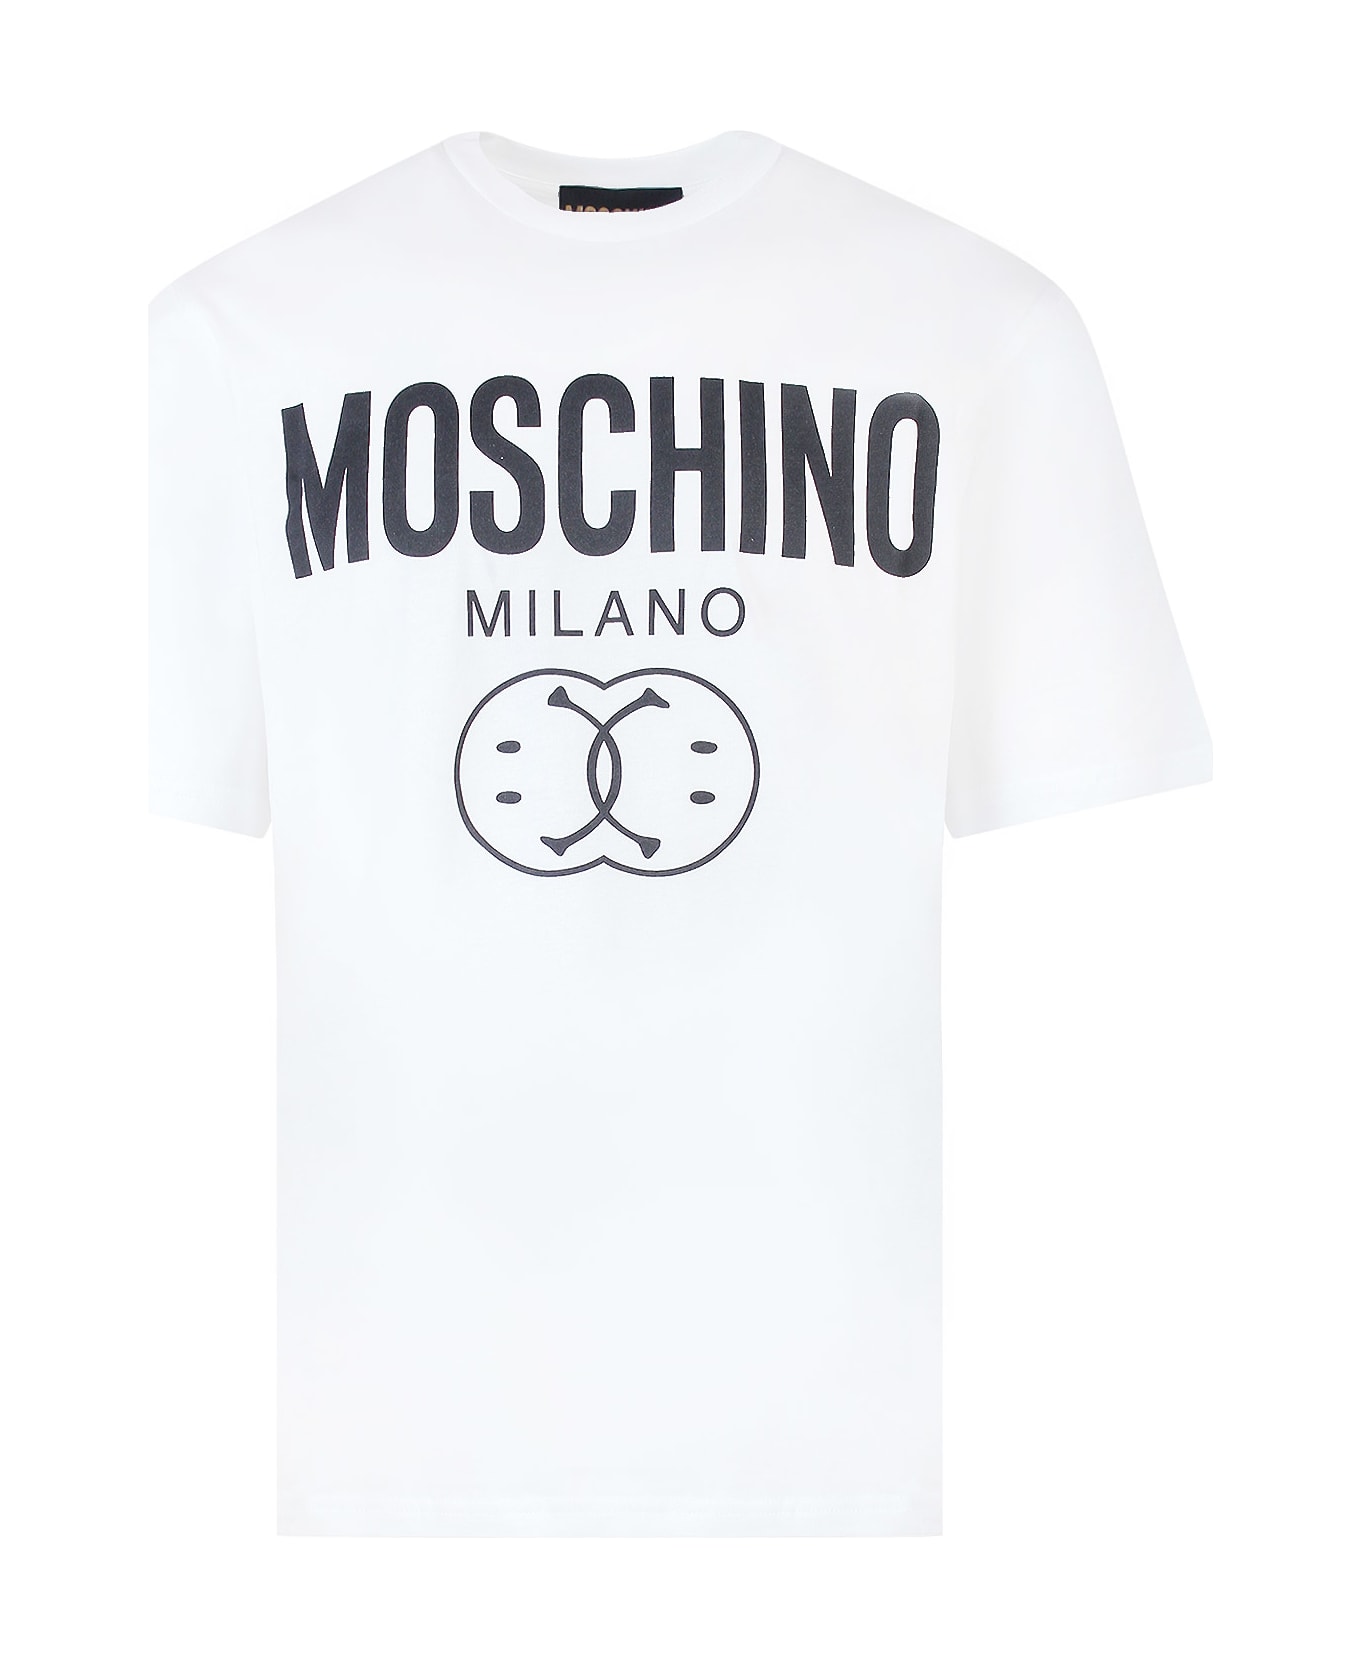 Moschino T-shirt - White シャツ